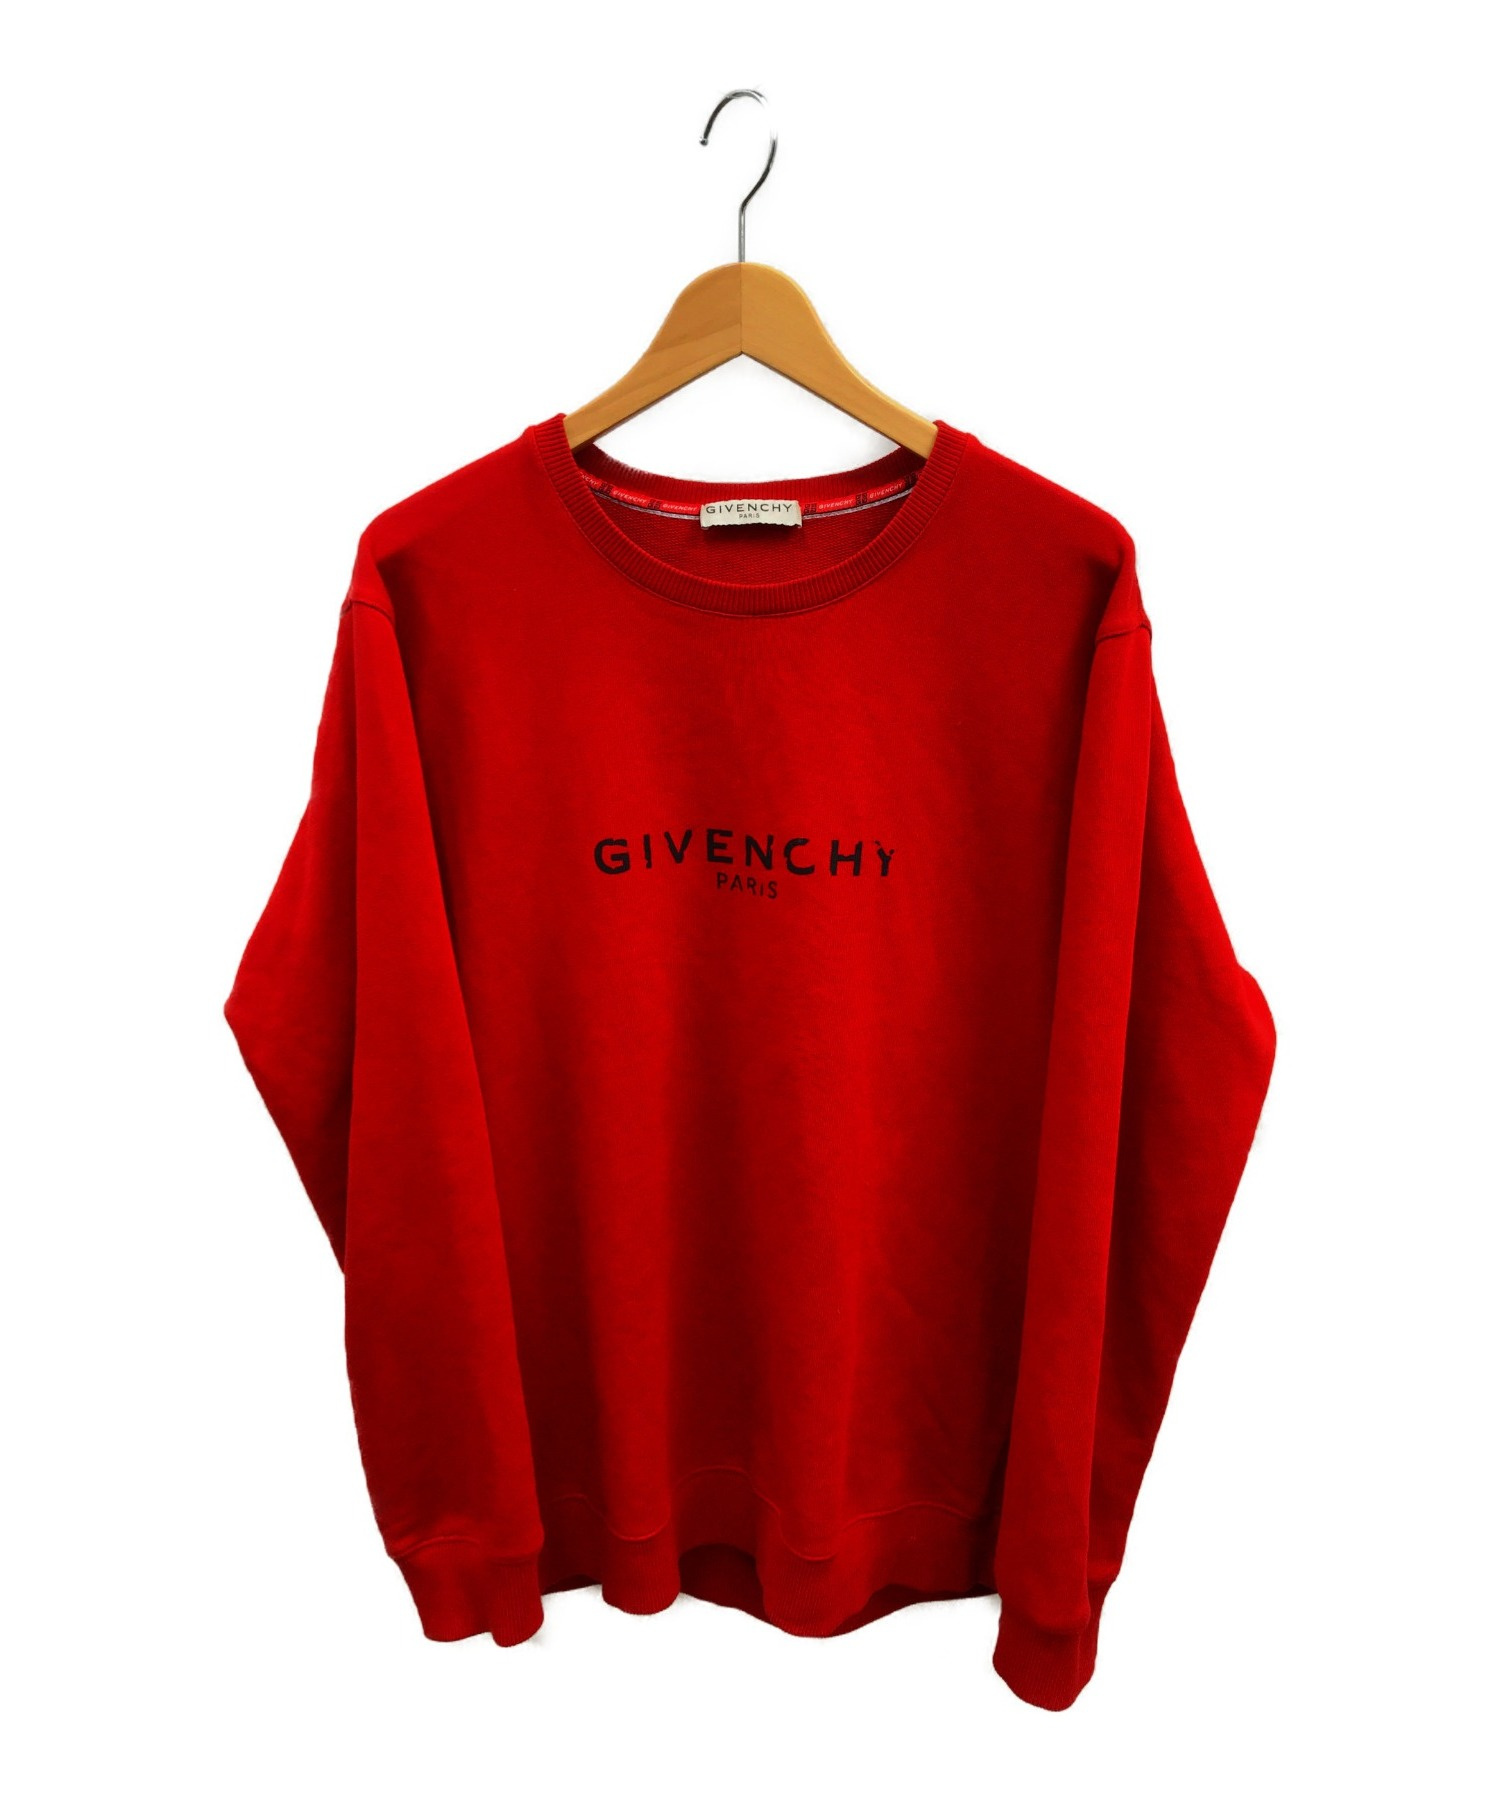 最上の品質な Givenchyジバンシーレディーススウェット 赤 gefert.com.br